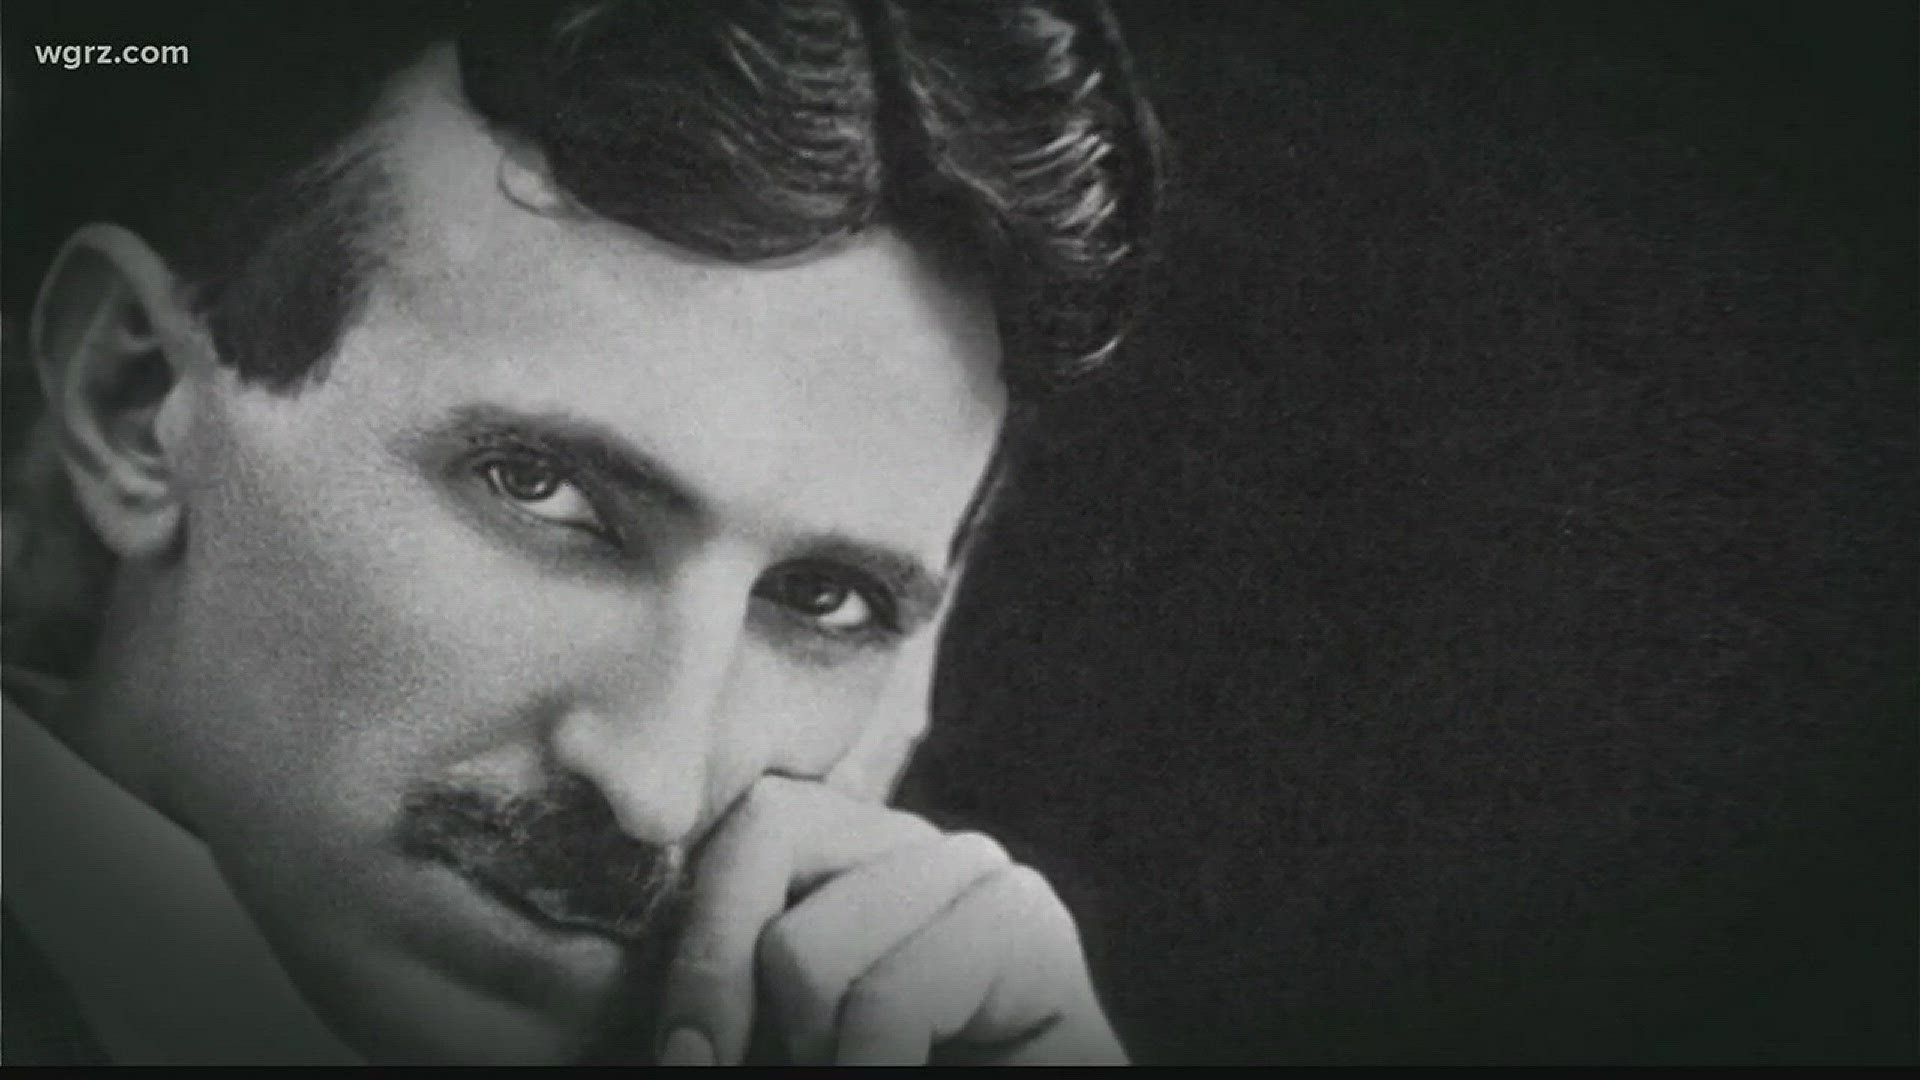 Efforts underway to honor Nikola Tesla.